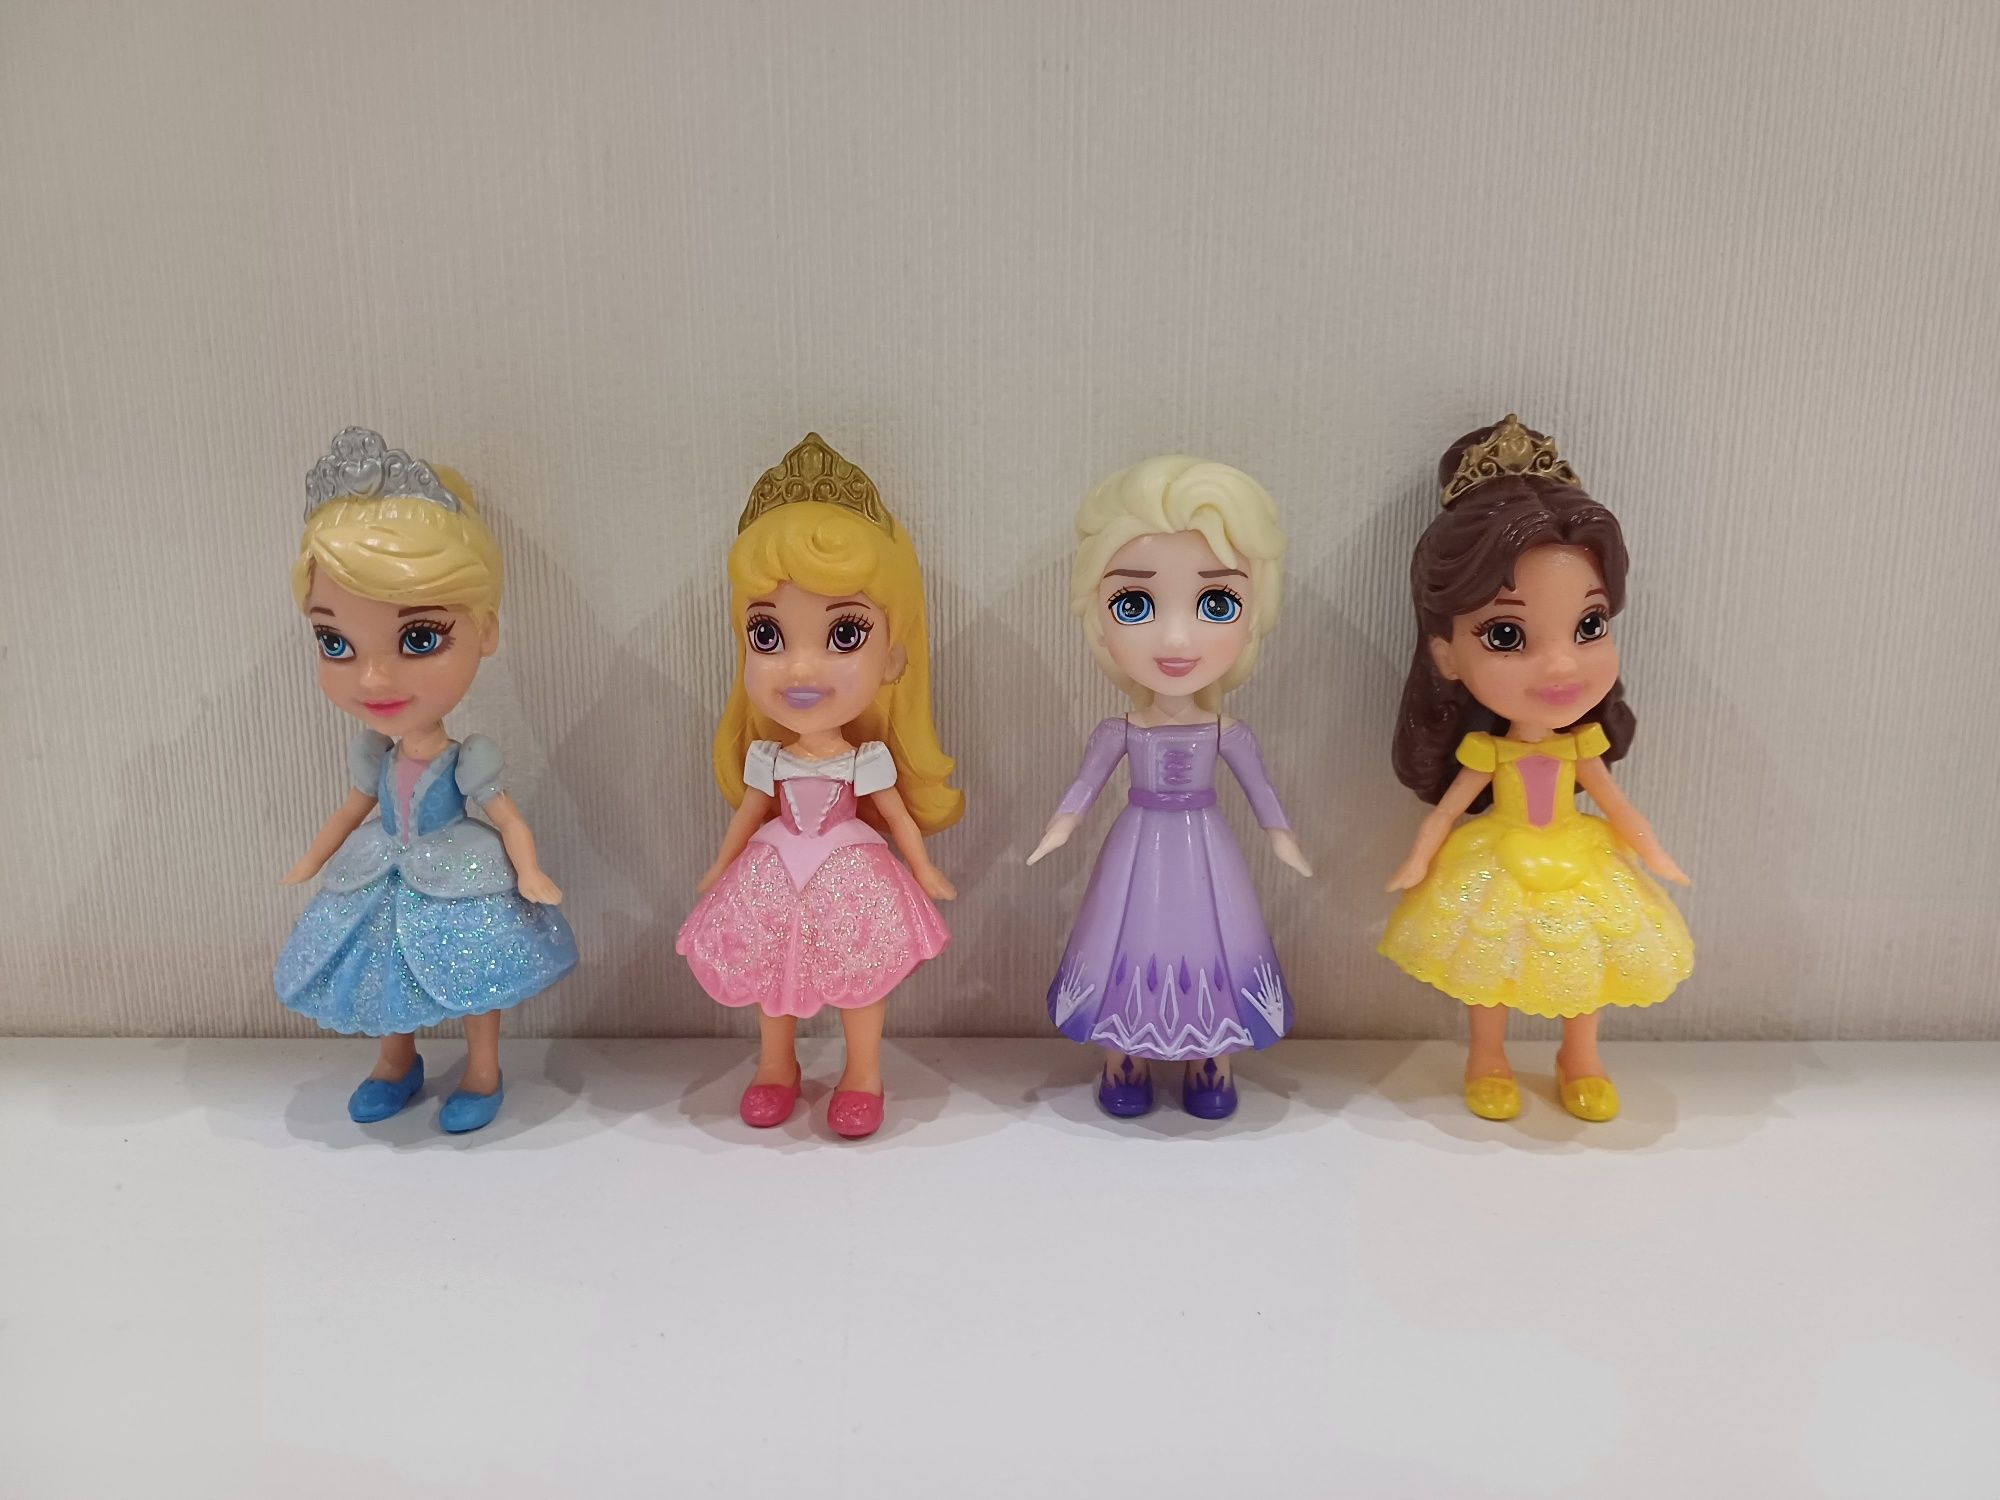 Принцеси Disney Hasbro. Золушка, Аврора, Белосніжка, Рапунциль, Бель